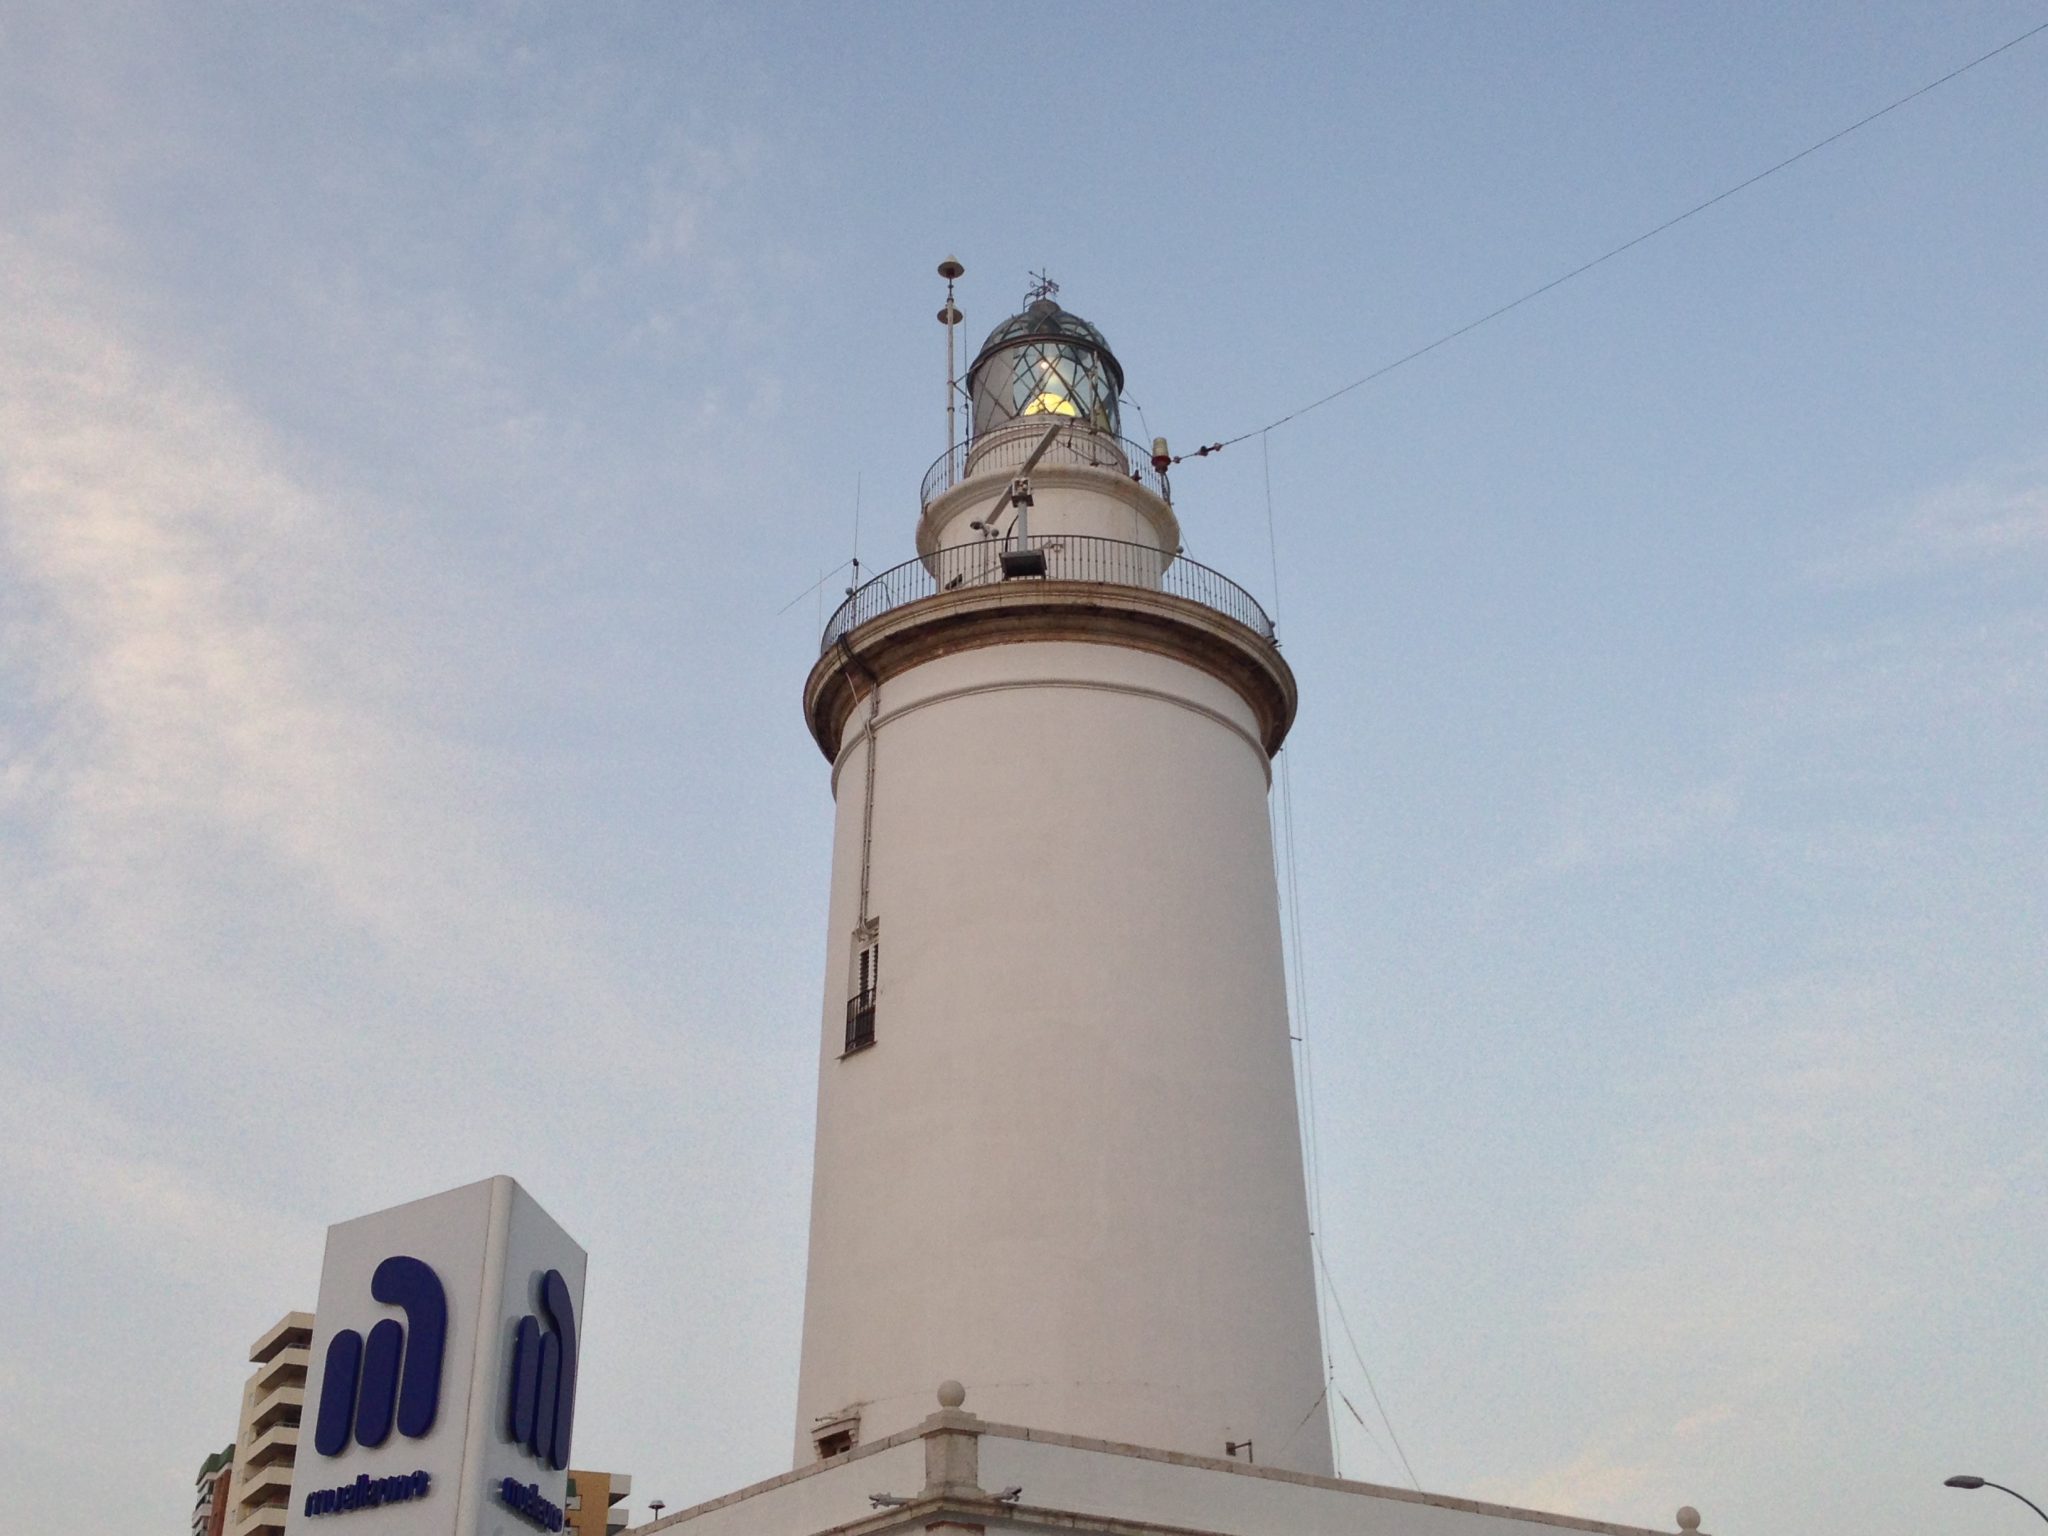 Lighthouse (La Farola), Málaga, Spain